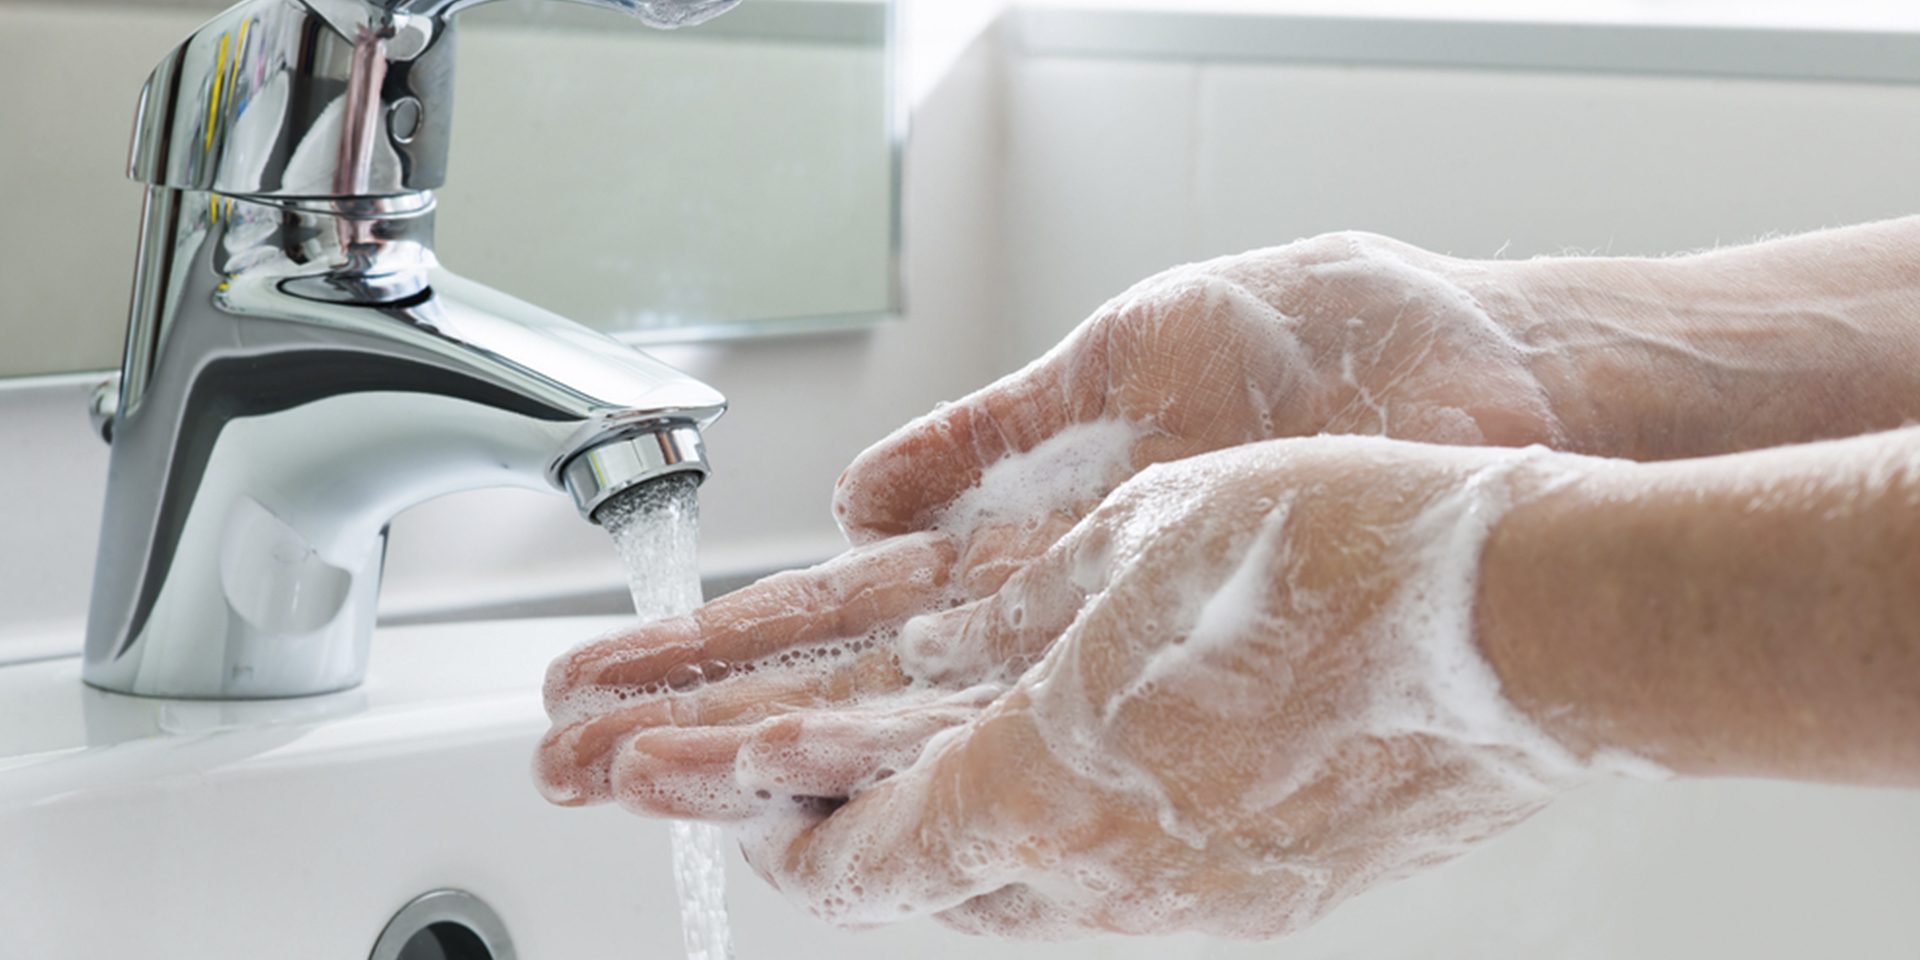 washing hands for coronavirus